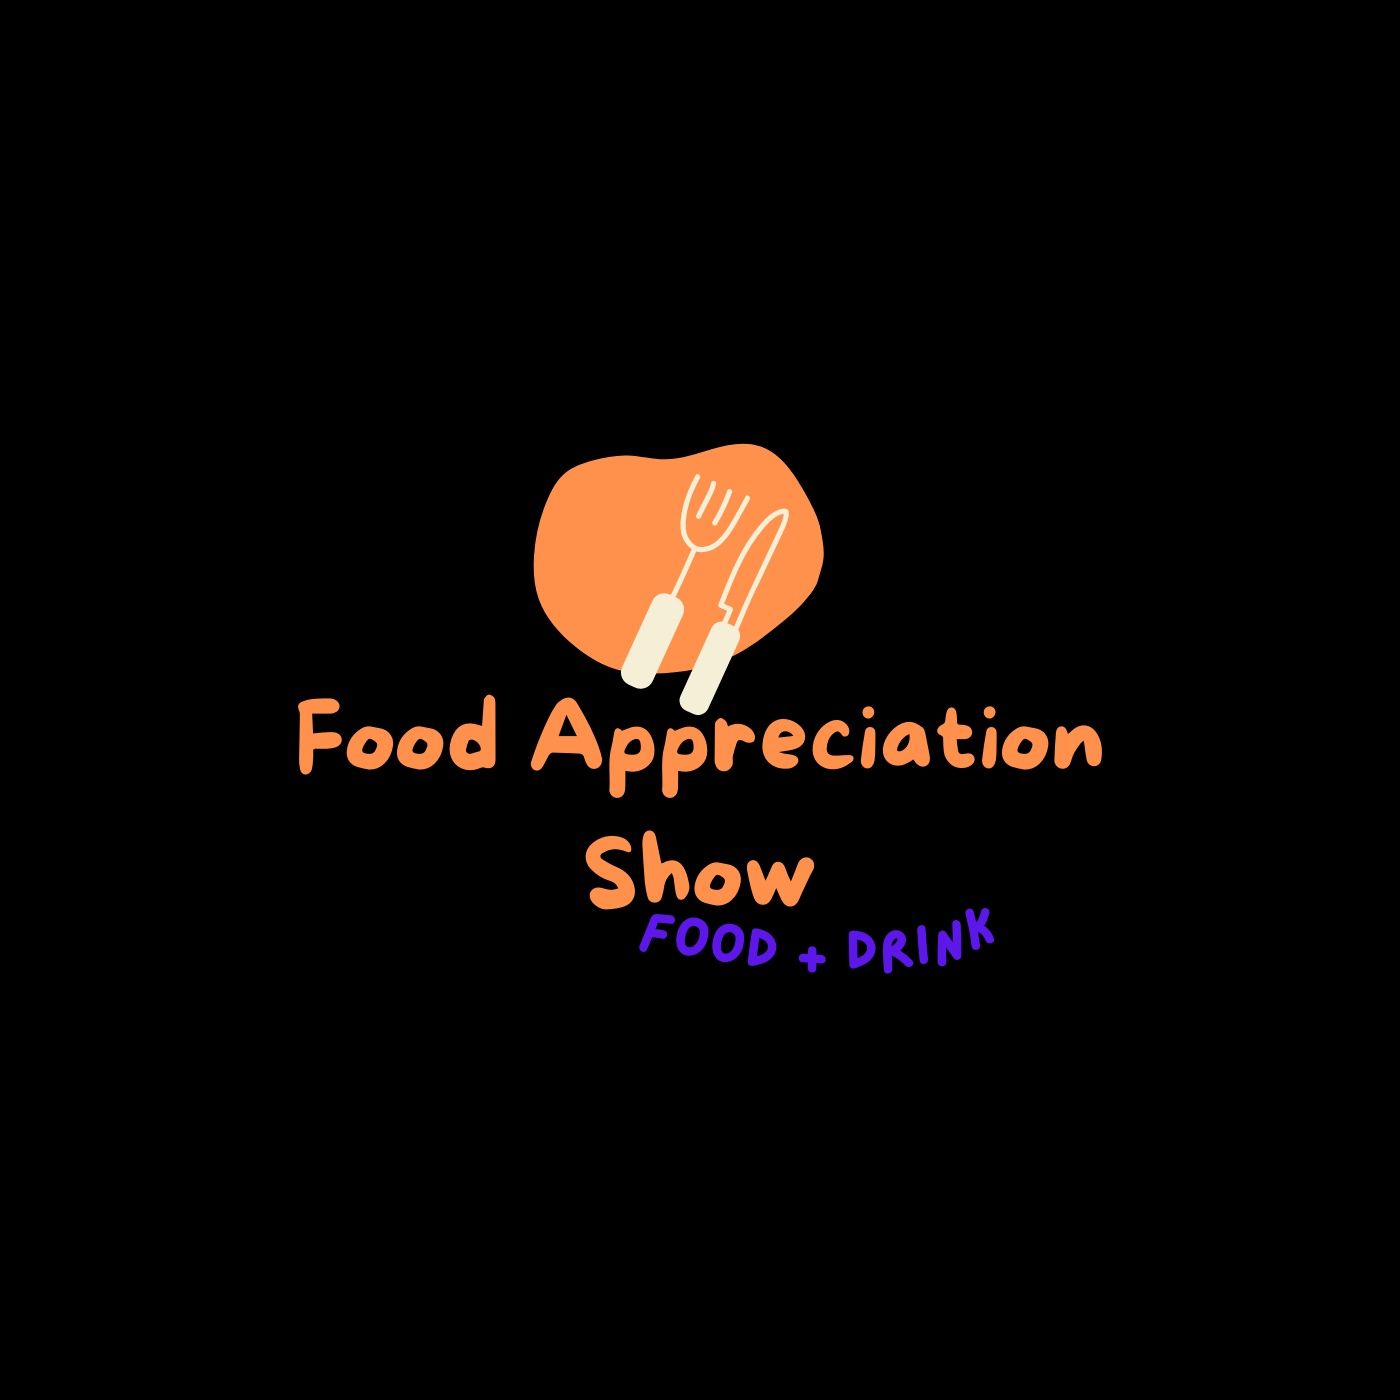 Food Appreciation Show